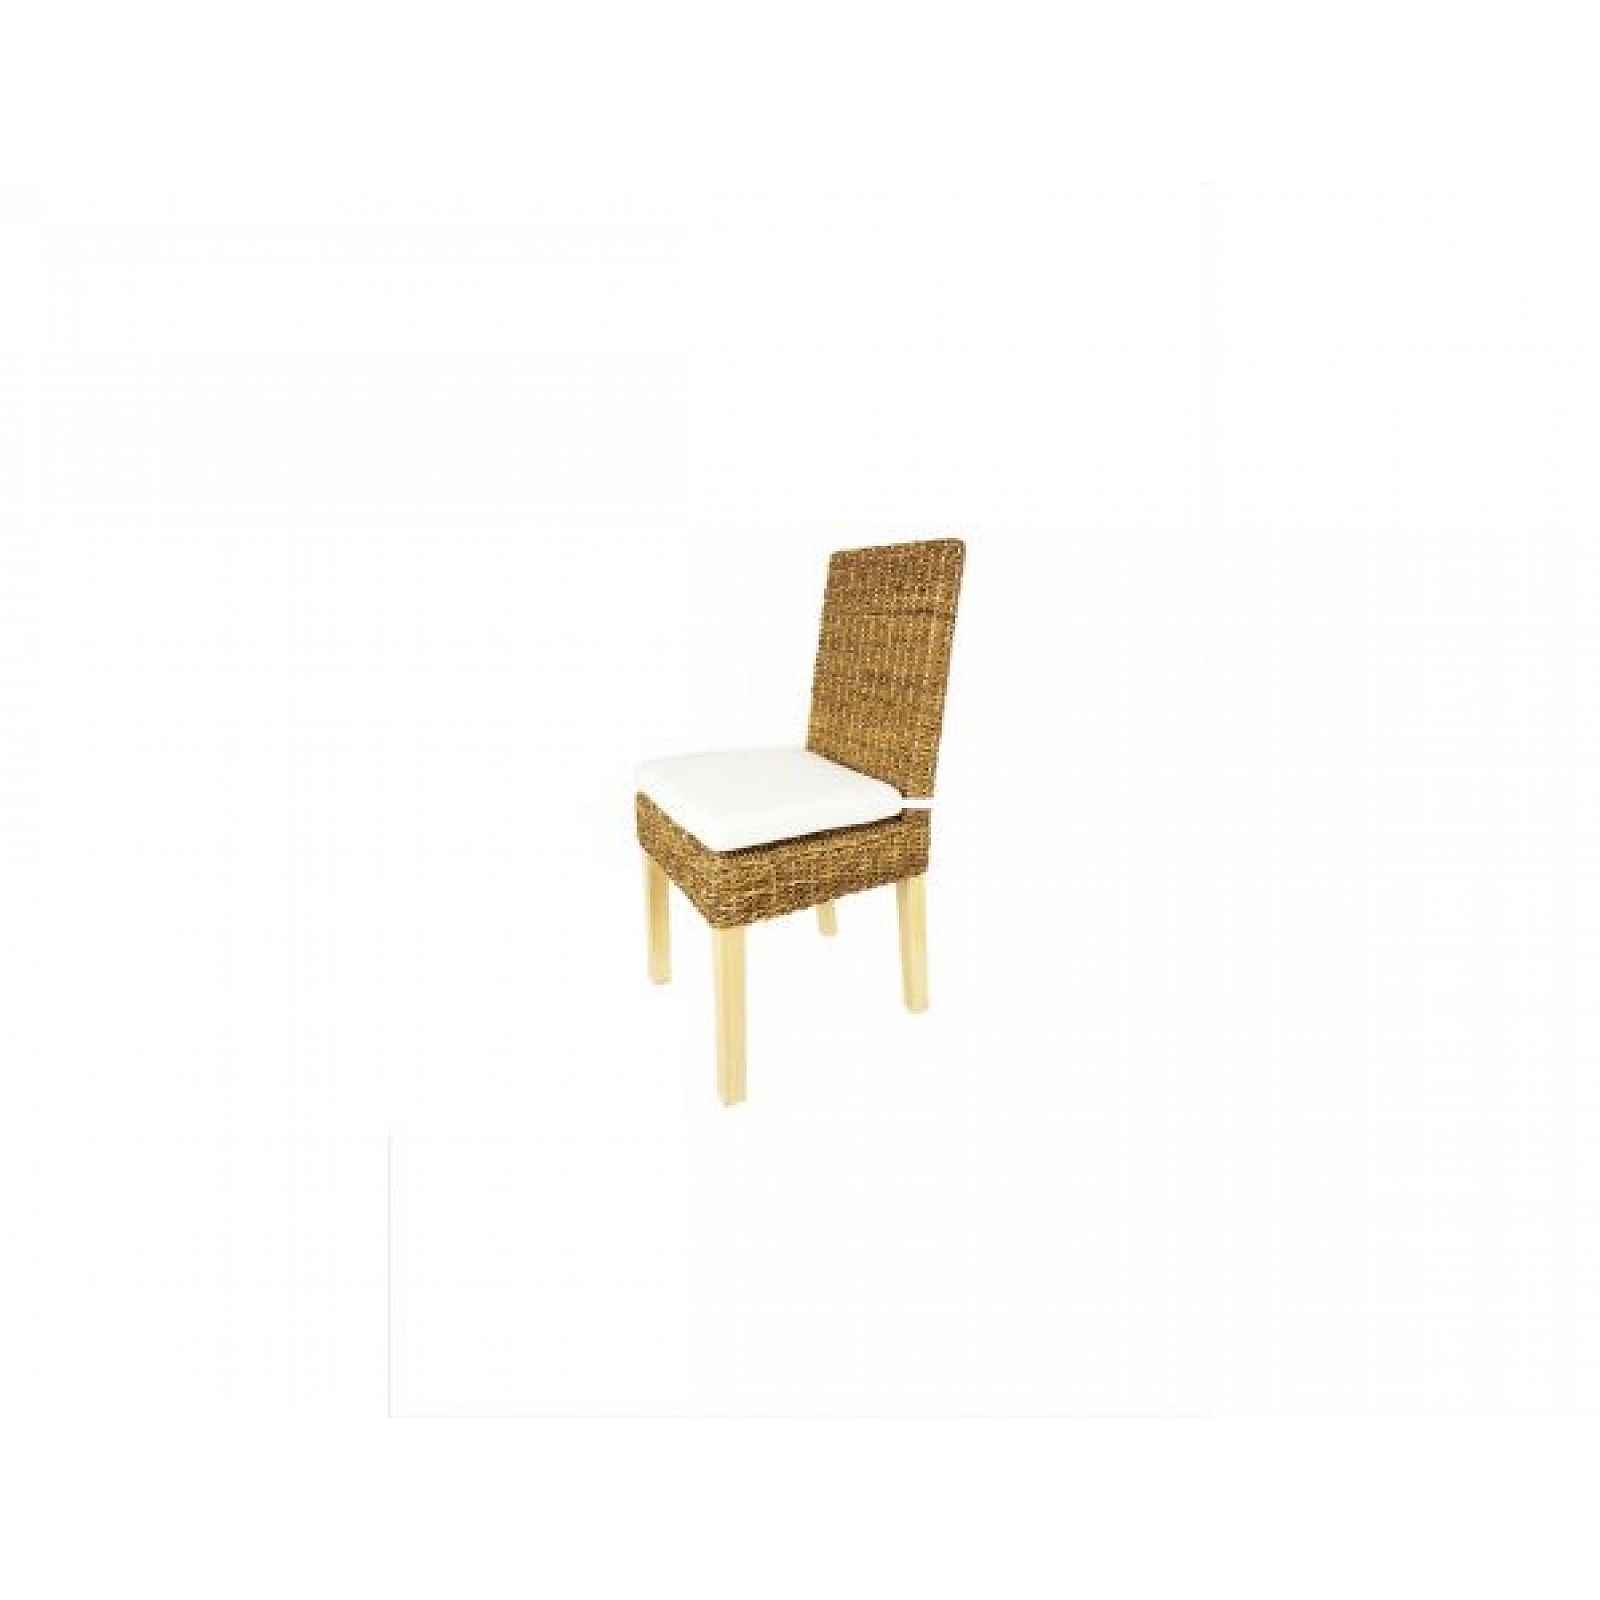 Ratanová židle SEATTLE NATUR, konstrukce borovice, hnědá